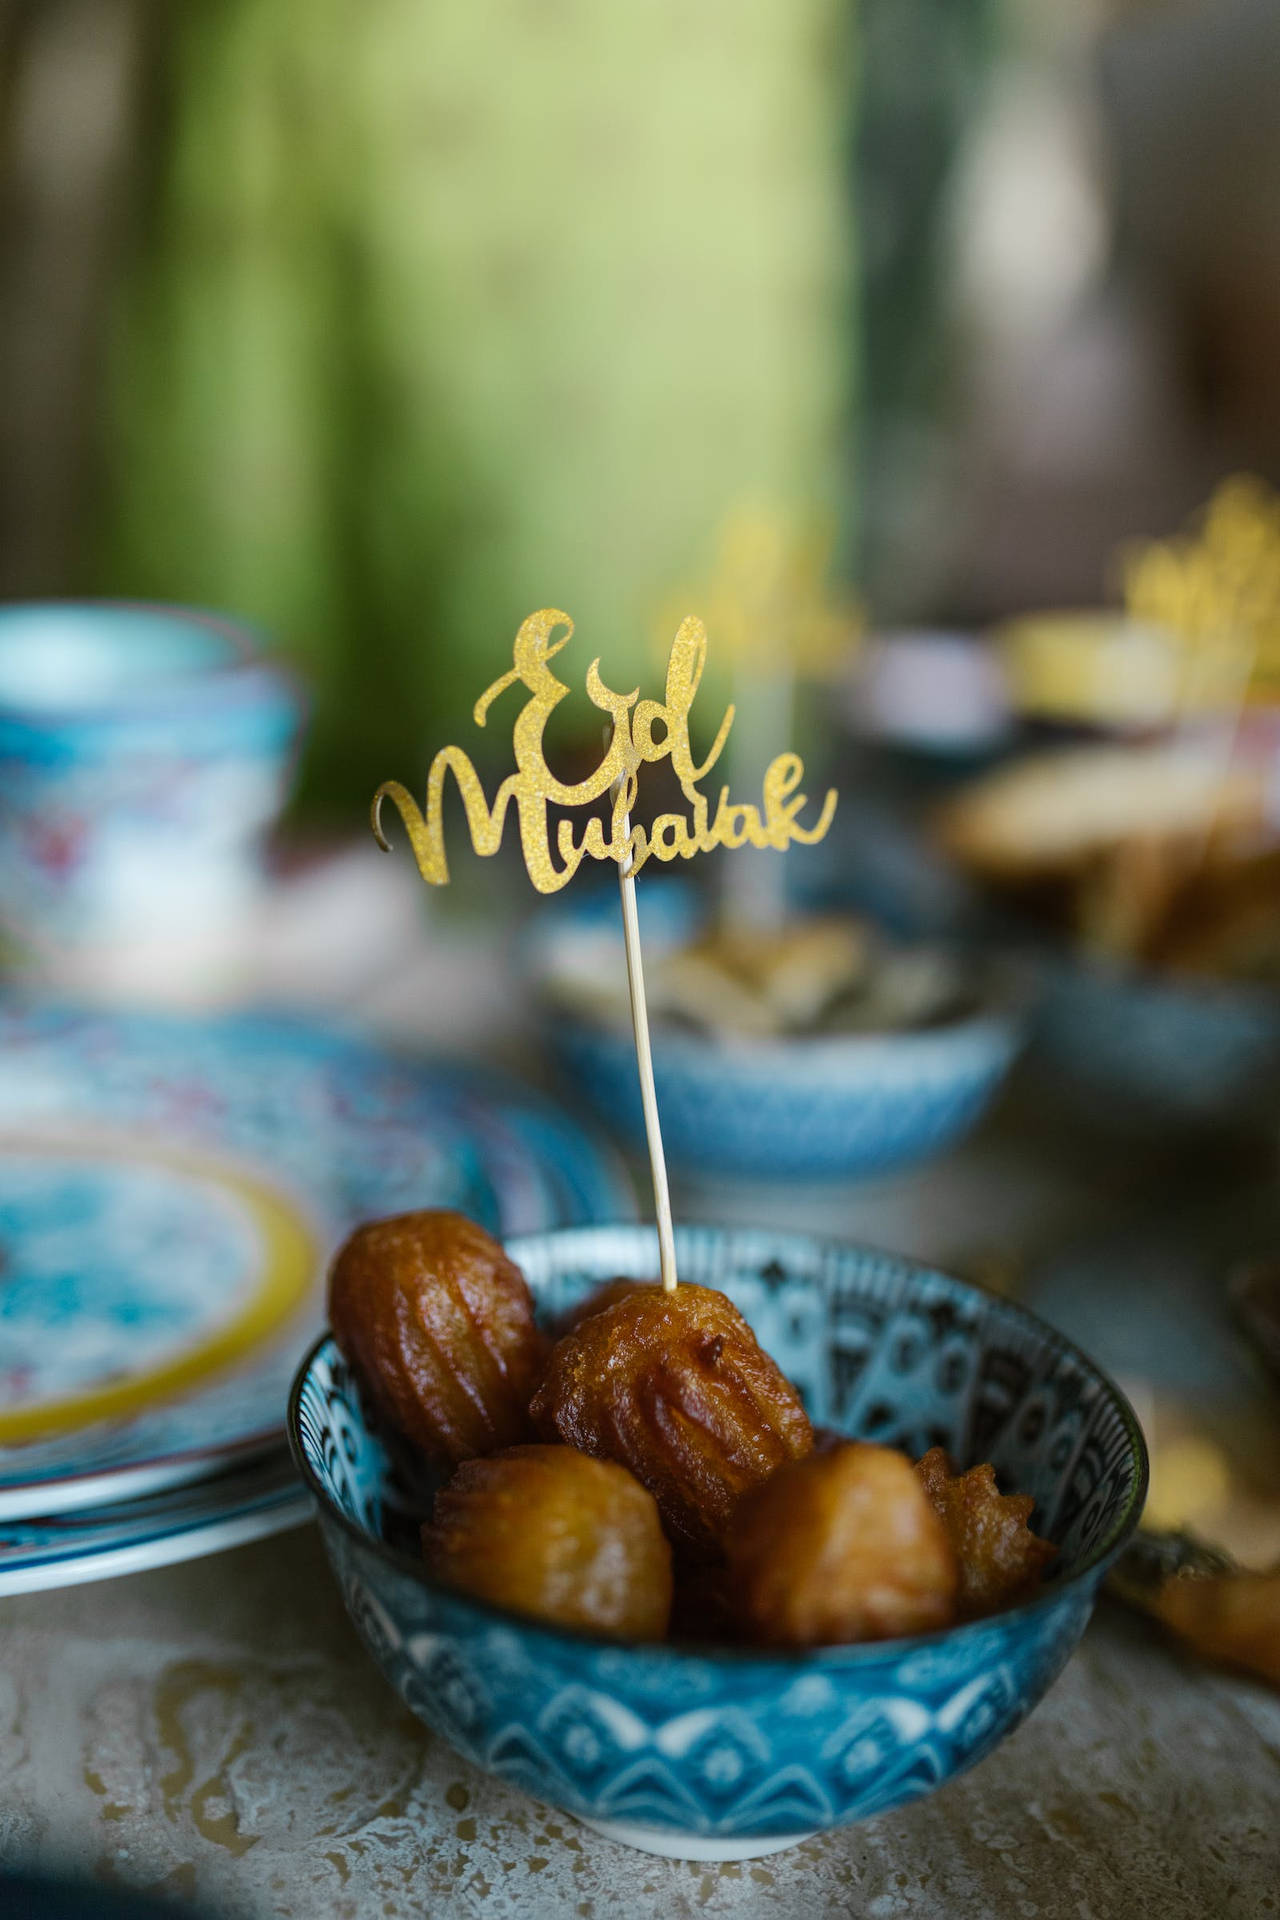 Caption: Celebrating Eid Mubarak With Joy & Festivity Background